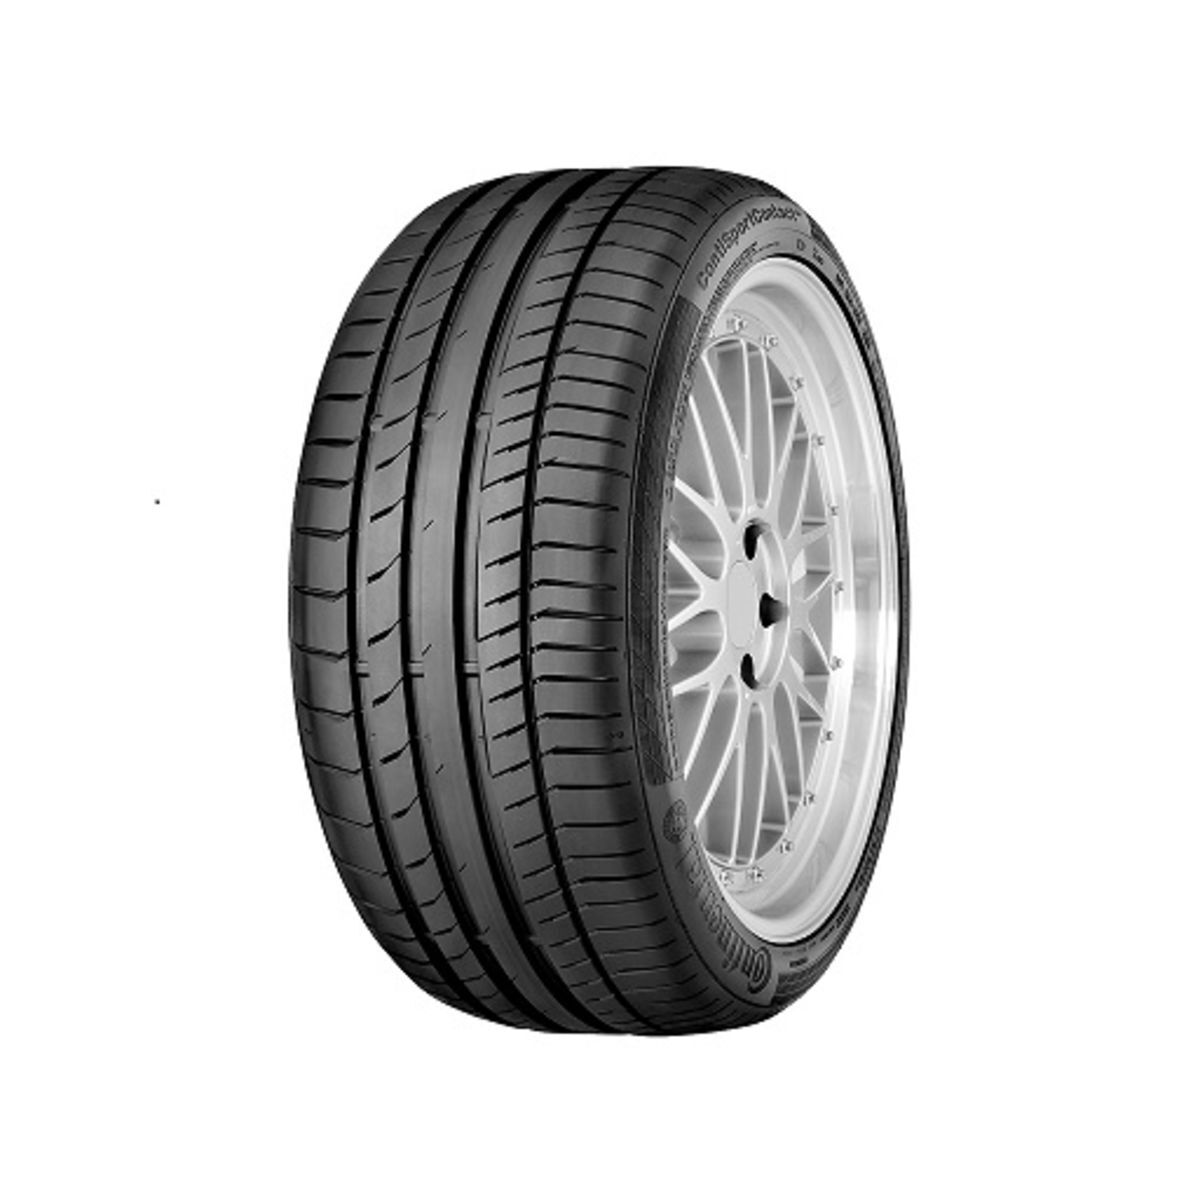 Neumáticos de verano CONTINENTAL ContiSportContact 5P 245/40R18 XL 97Y